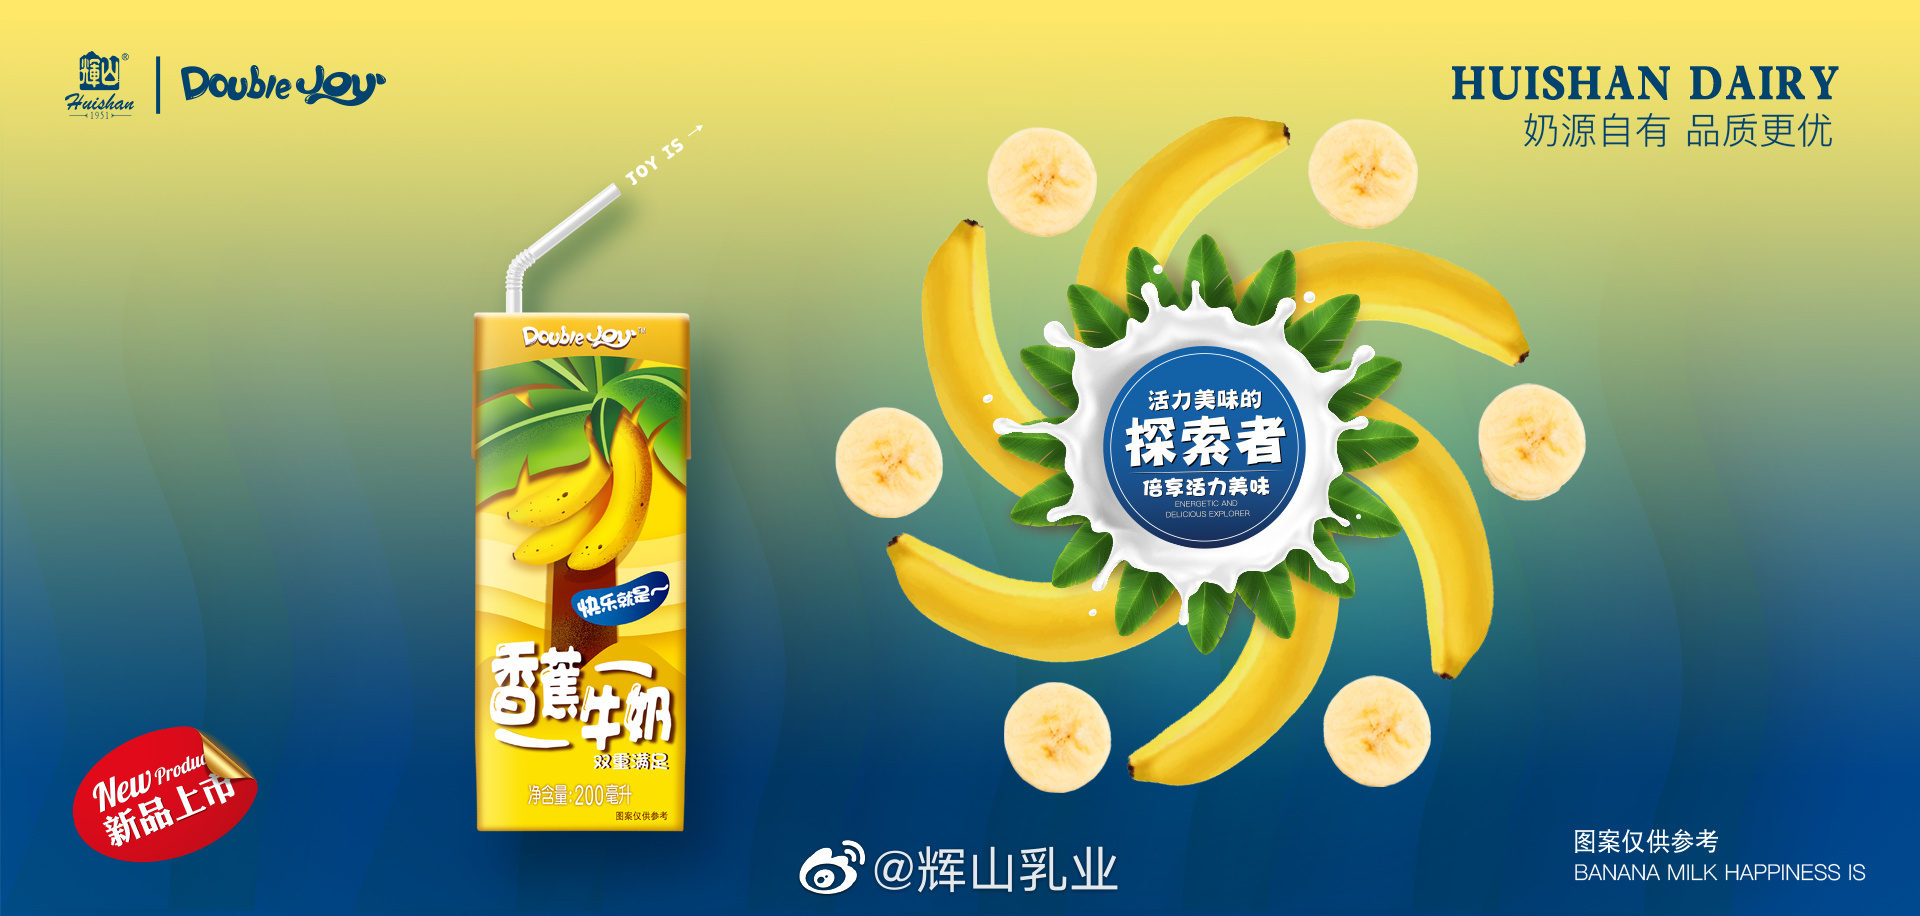 《香蕉牛奶》海报及视觉延展-古田路9号-品牌创意/版权保护平台